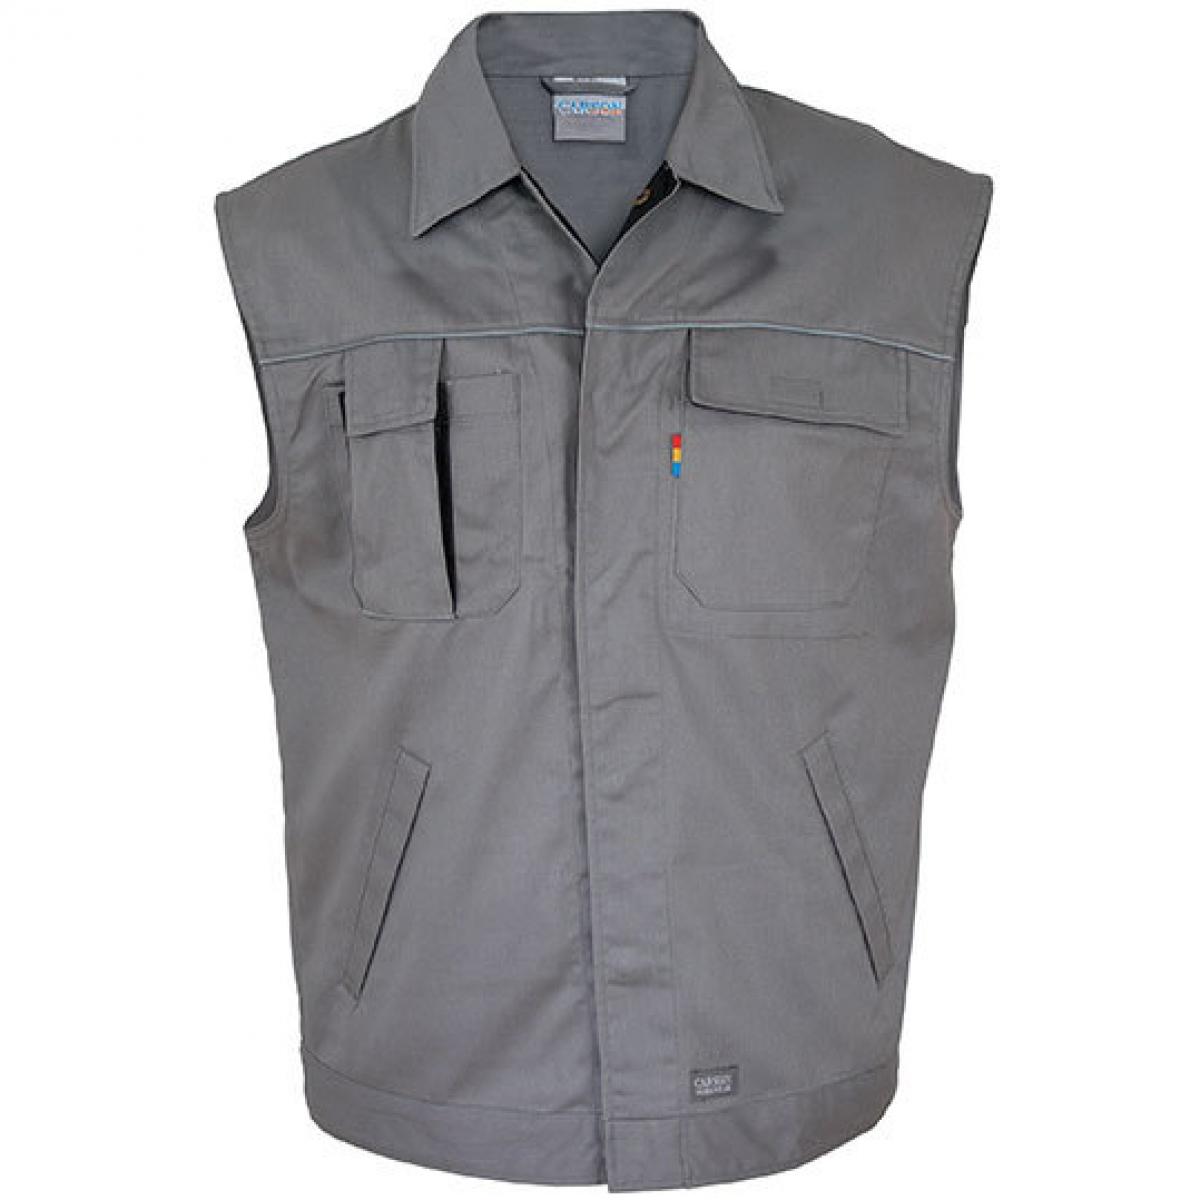 Hersteller: Carson Contrast Herstellernummer: CC700 Artikelbezeichnung: Herren Contrast Work Vest / Bei 60 Grad waschbar Farbe: Grey/Black